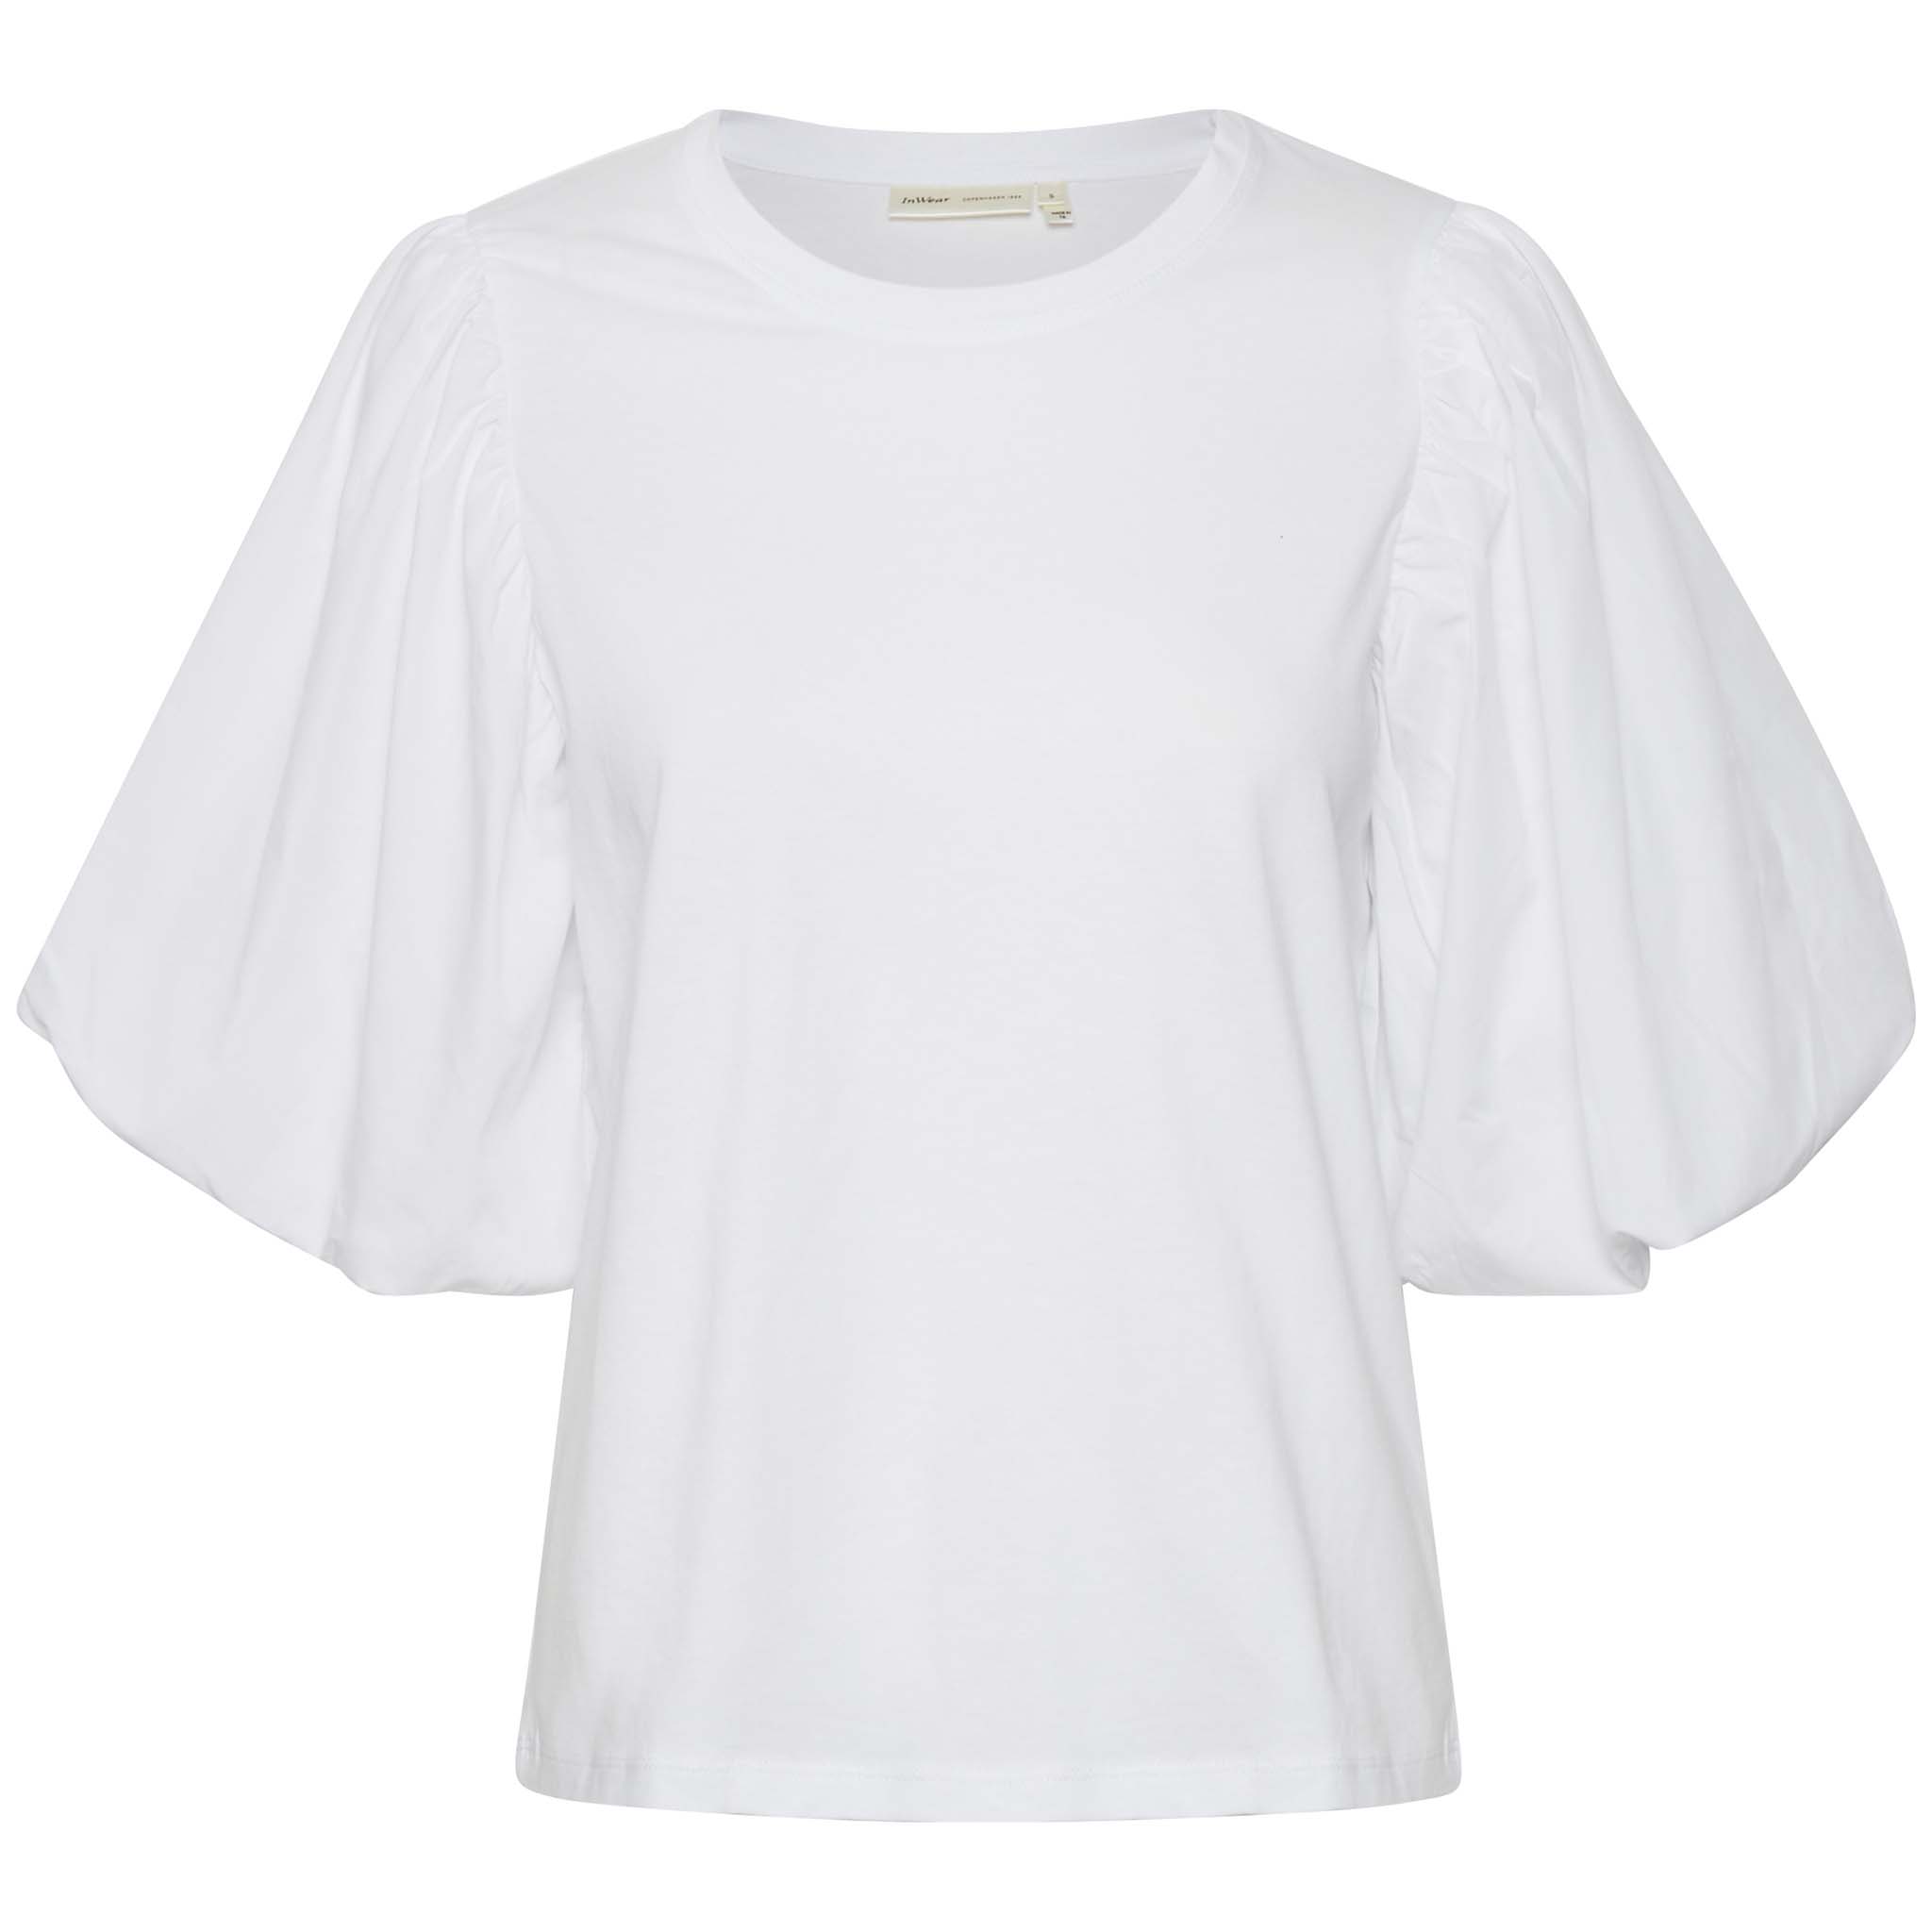 In Wear, valkoinen t-paita, jossa suuret puhvihihat. Etukuva.